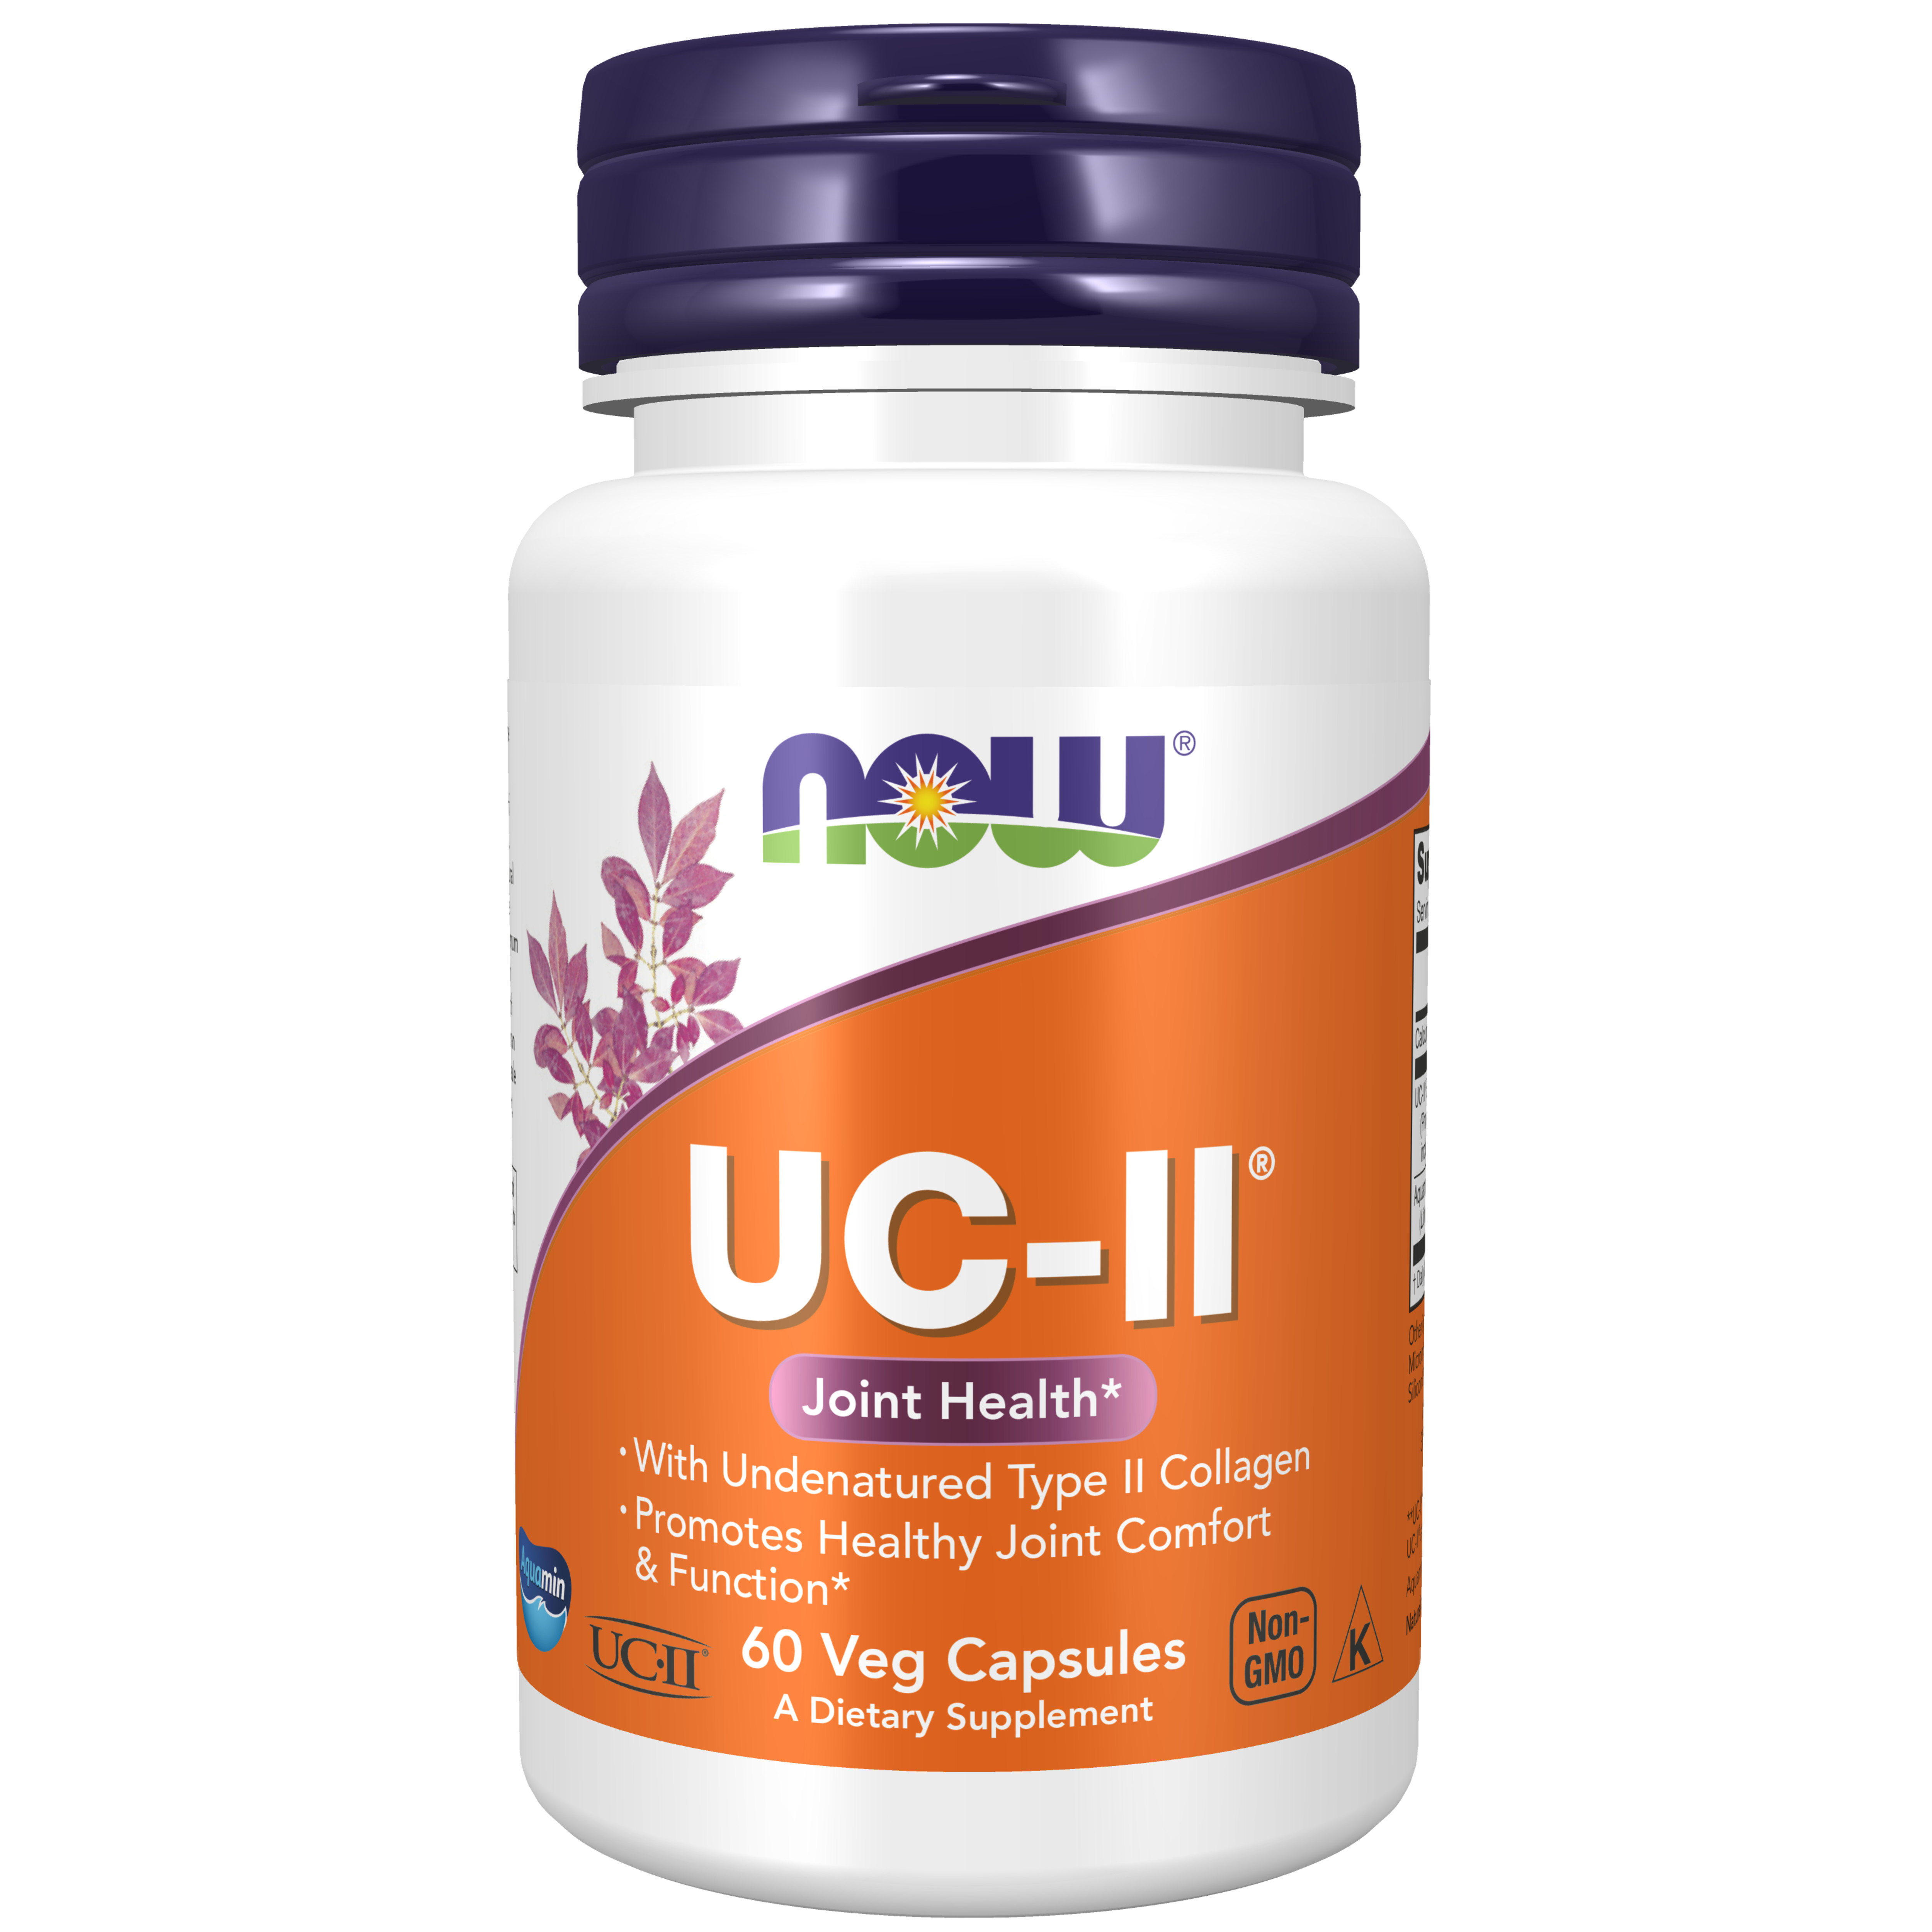 UC-II Type II Collagel 40 mg 60 VCAPS hãng Now foods USA Cung cấp dưỡng chất, bảo tồn sụn khớp hư hại, giamr thoái hóa sụn khớp